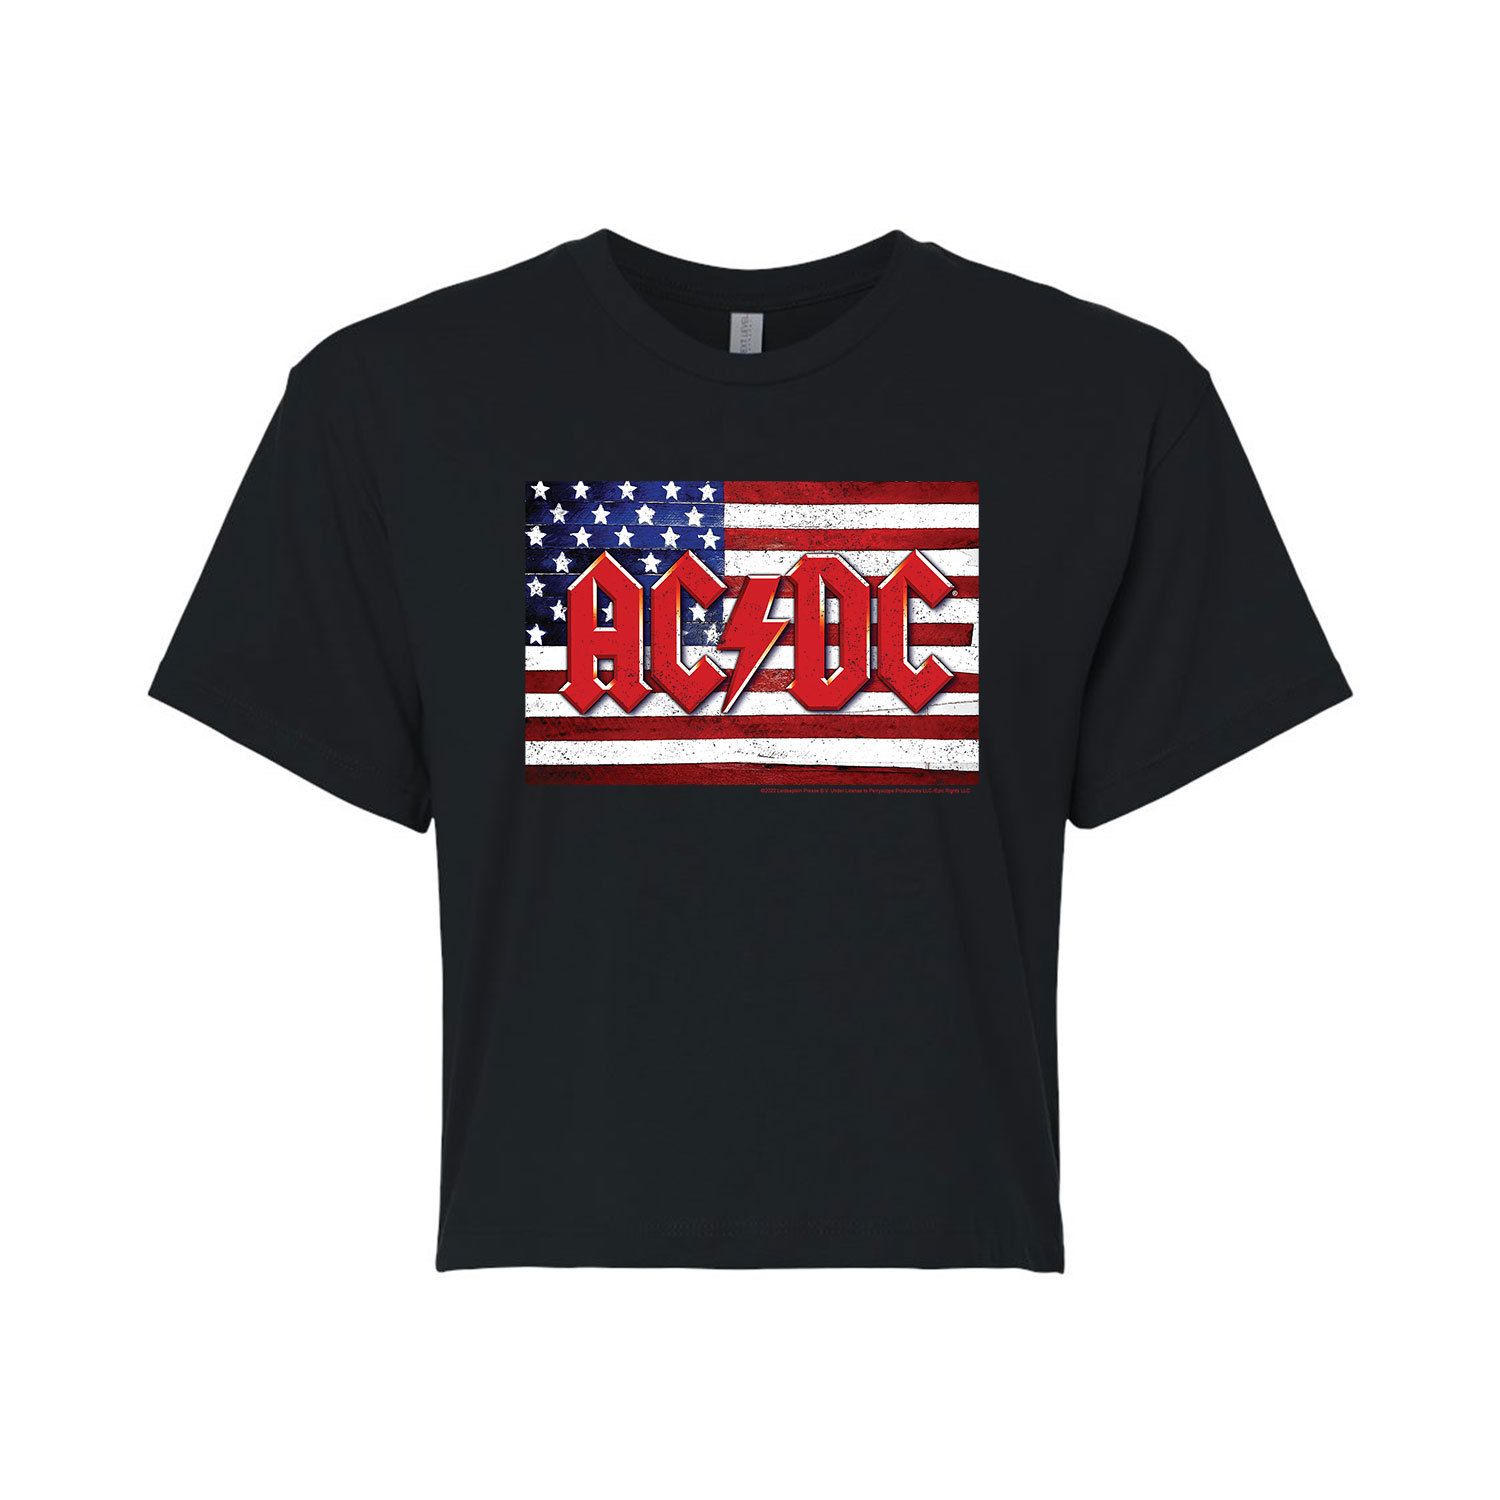 Укороченная футболка с графическим рисунком AC/DC для юниоров с американским флагом Licensed Character, черный укороченная худи с графическим рисунком ac dc patriotic для юниоров licensed character